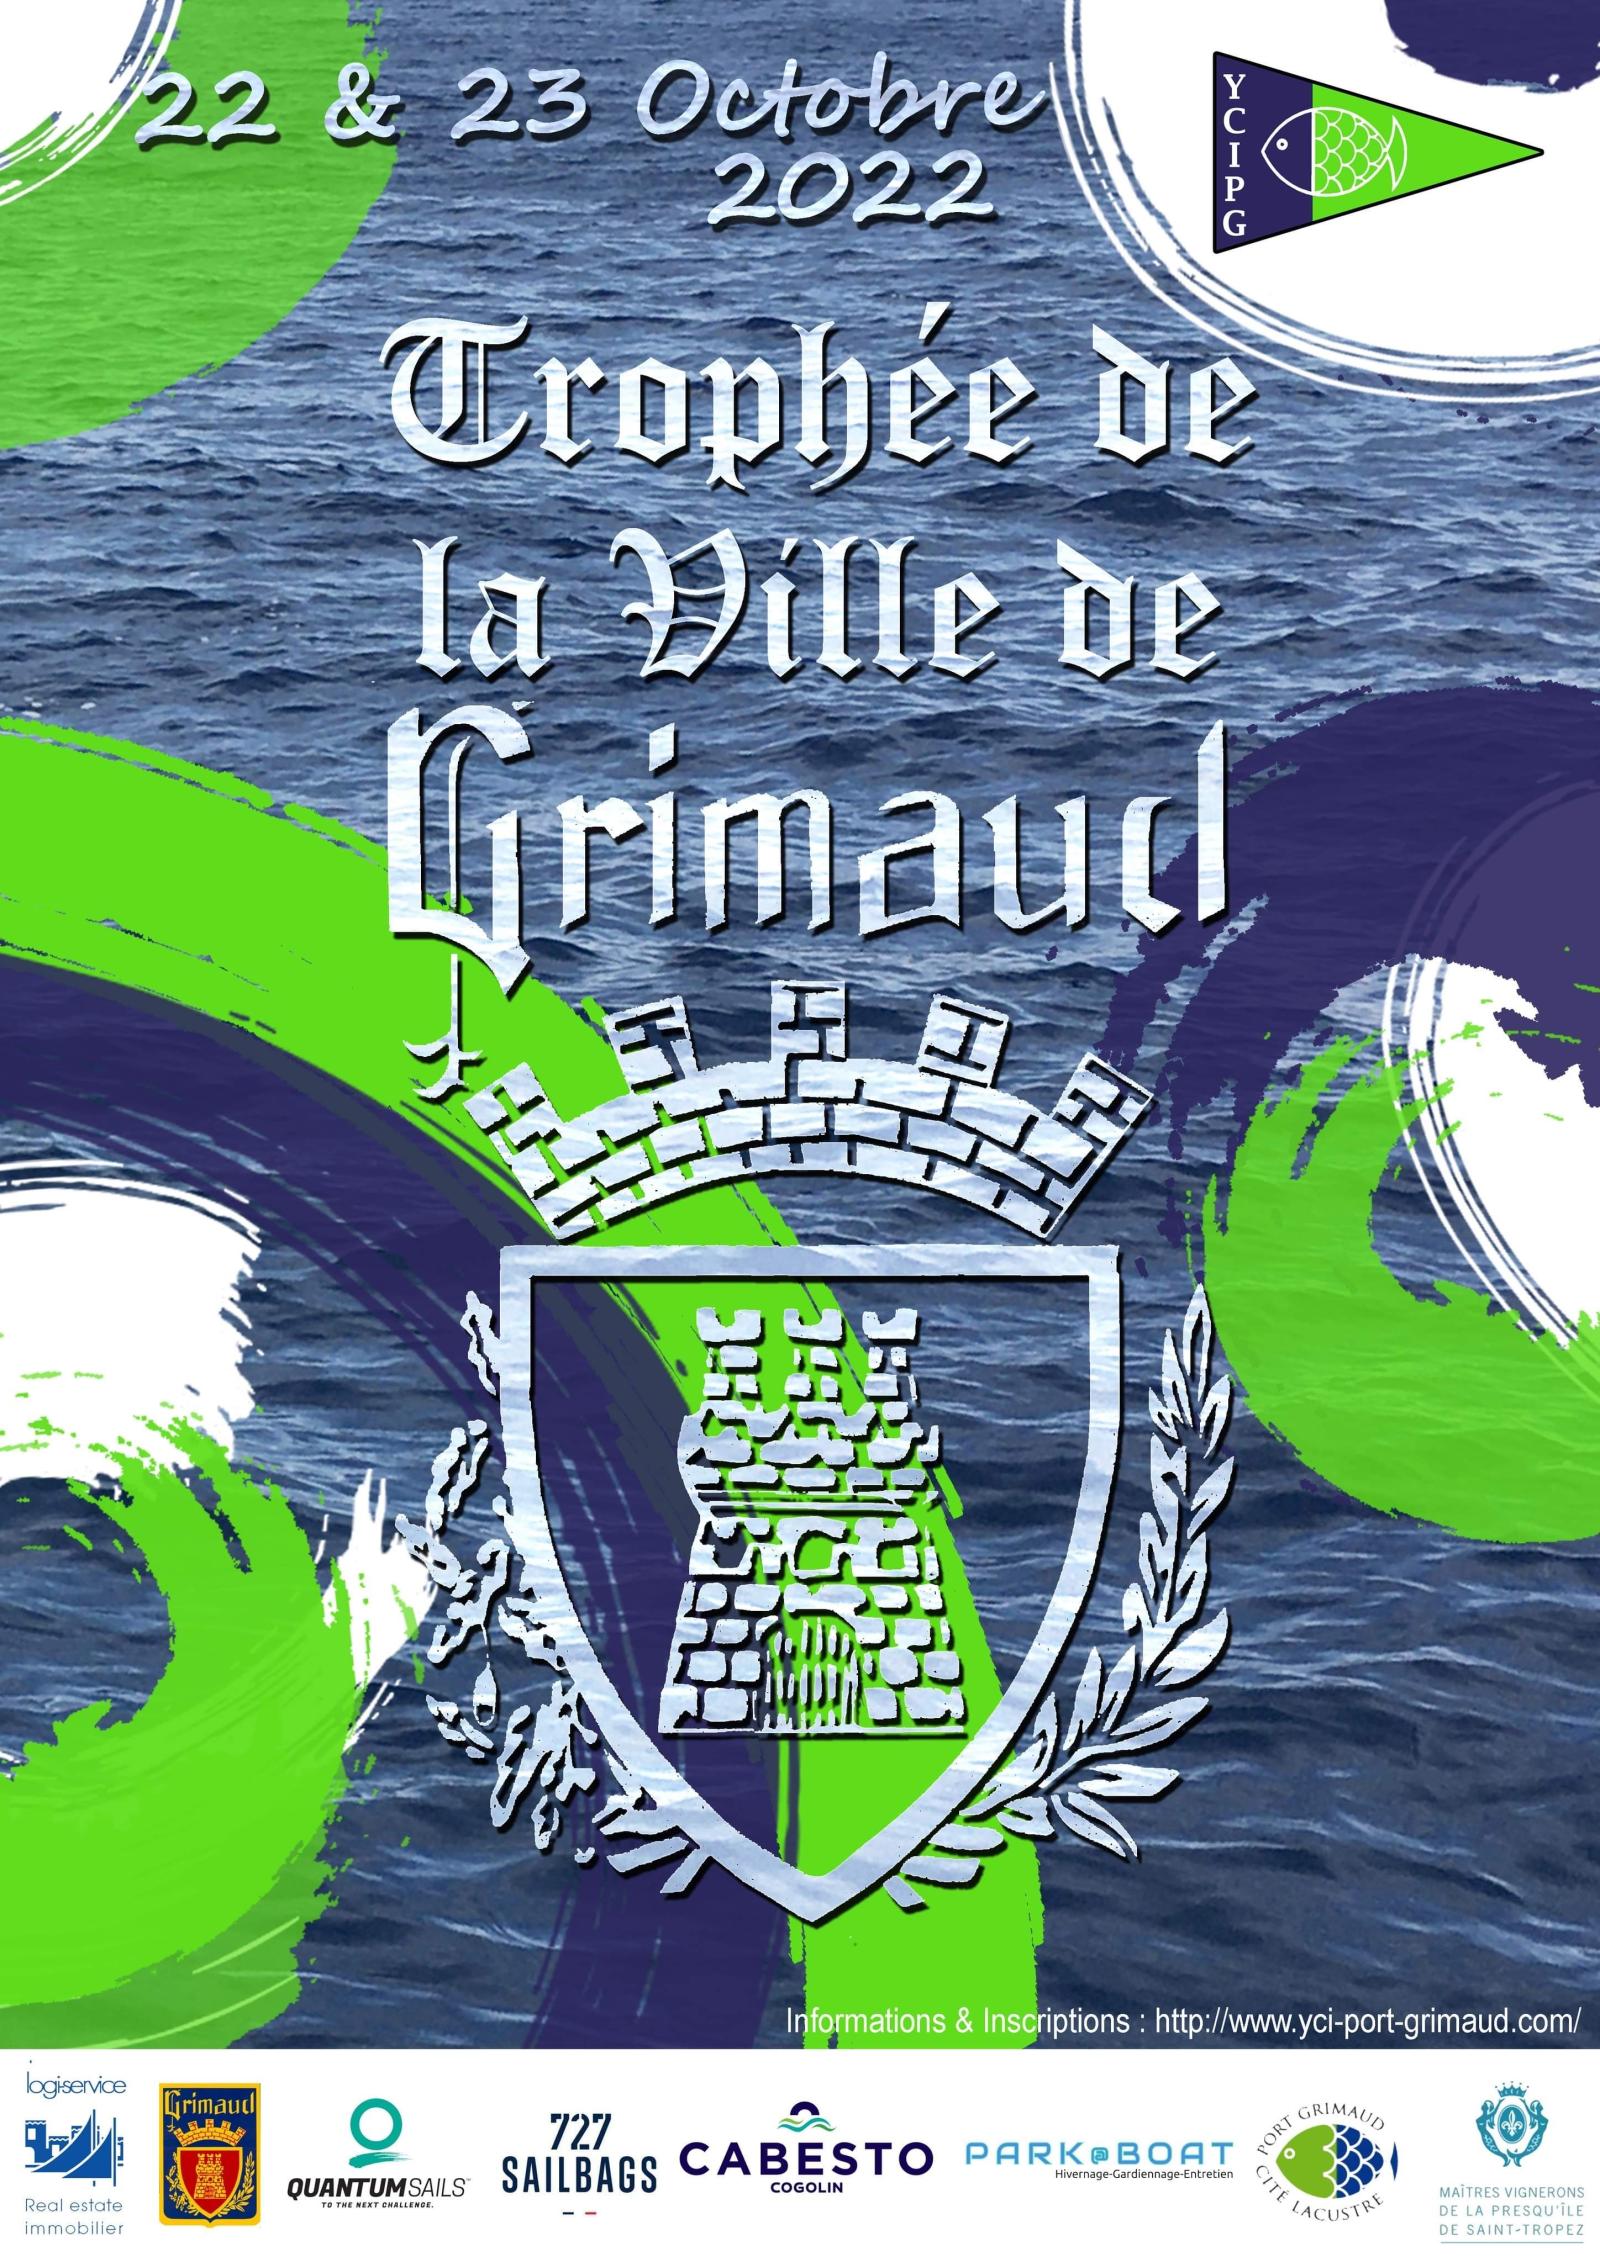 22 & 23 octobre 2022 : Trophée de la ville de Grimaud